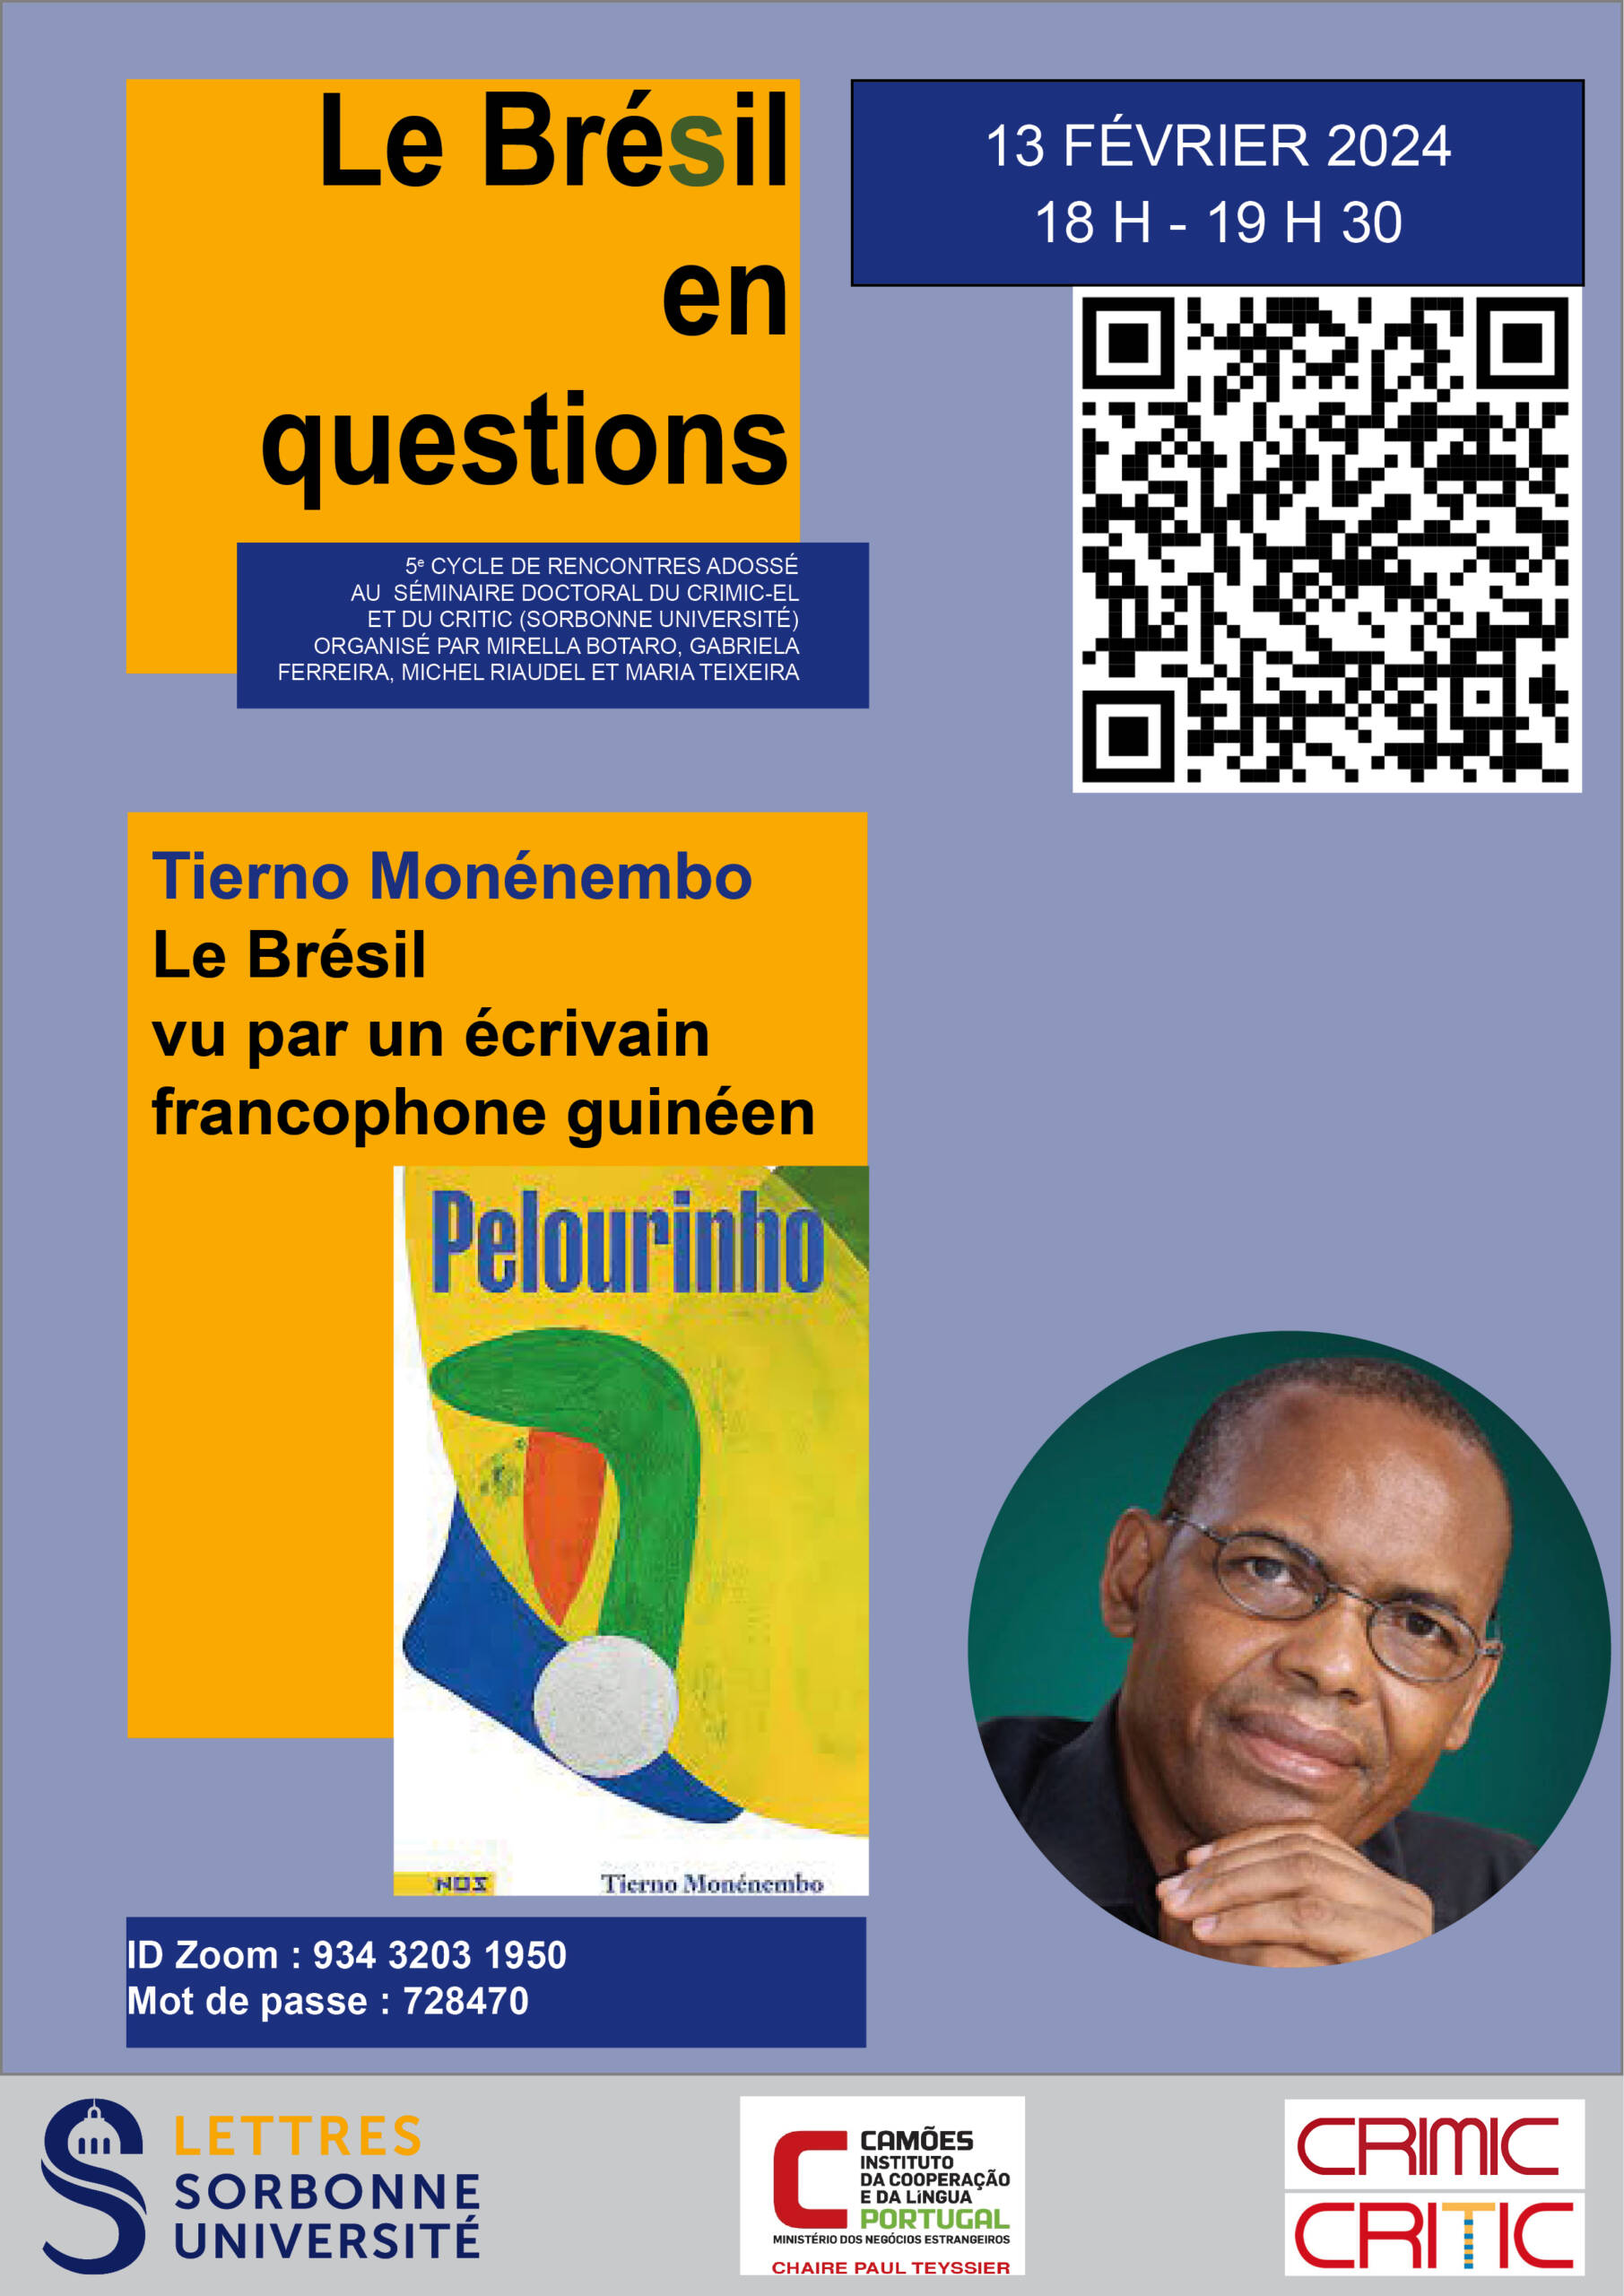 Le Brésil (en questions) vu par l'écrivain francophone guinéen Tierno Monémembo